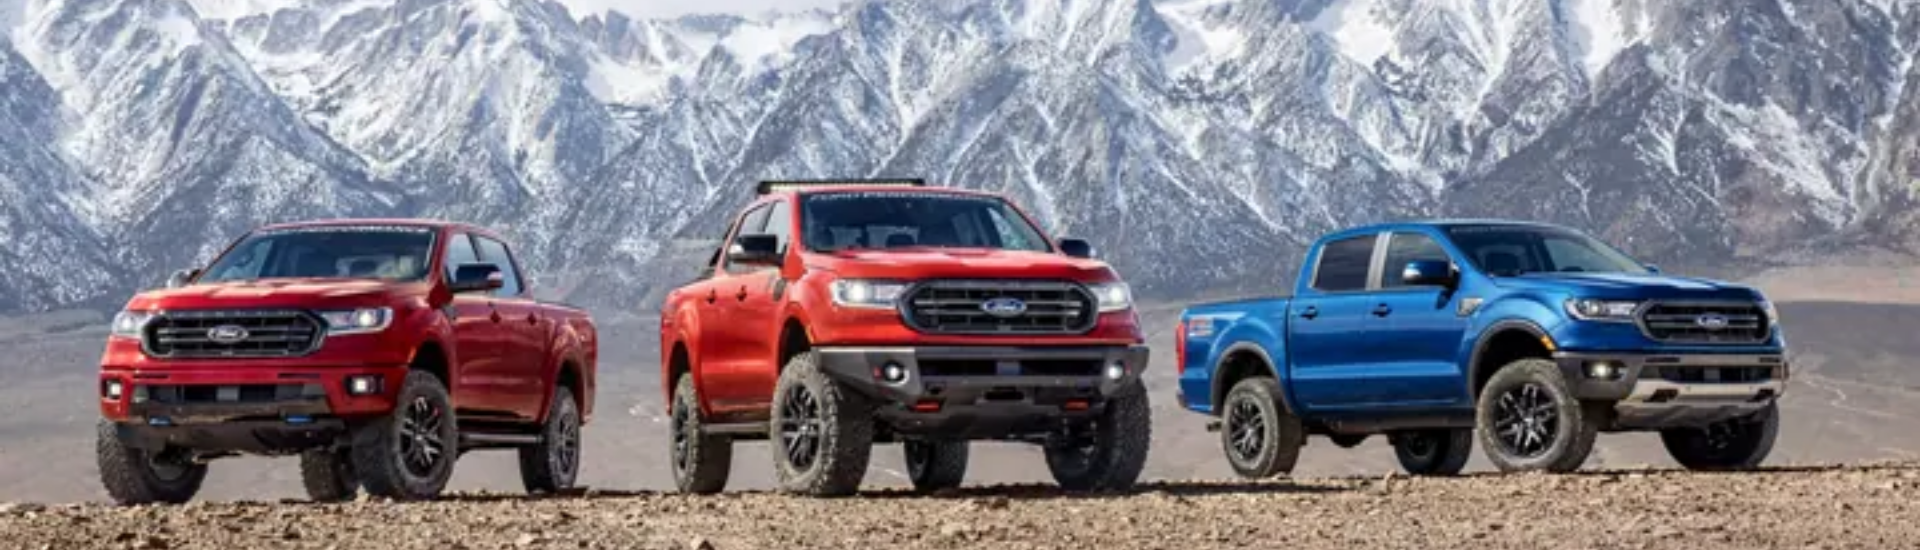 2021 Ford Ranger Trucks